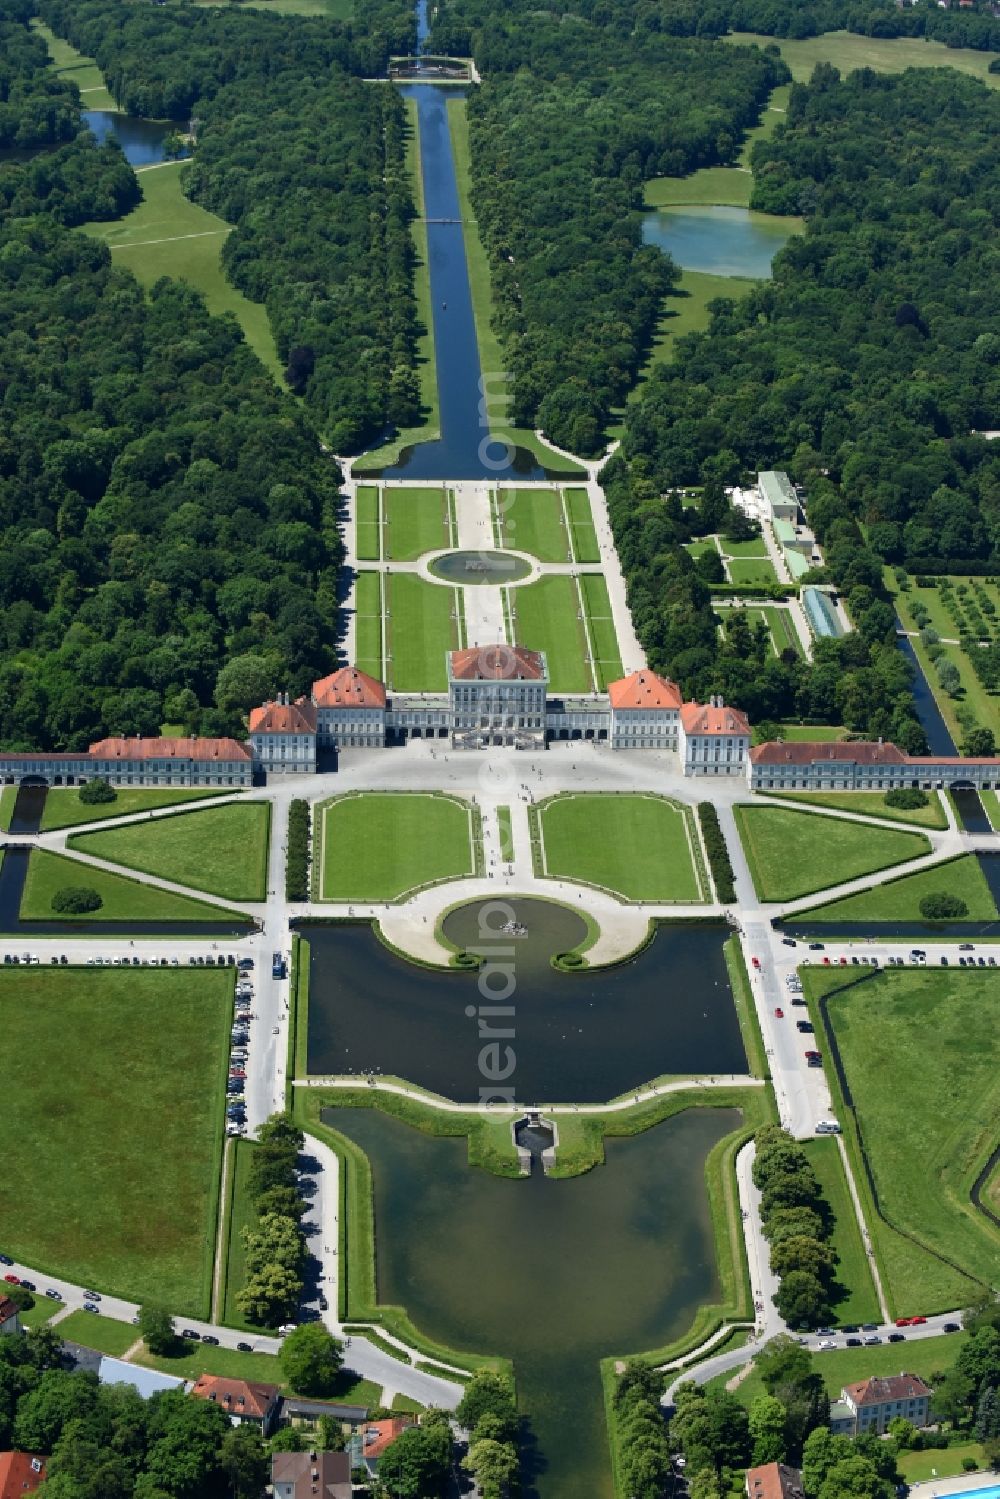 Aerial image München - Building and Castle Park Castle Nymphenburg im Stadtteil Neuhausen-Nymphenburg in Munich in the state Bavaria